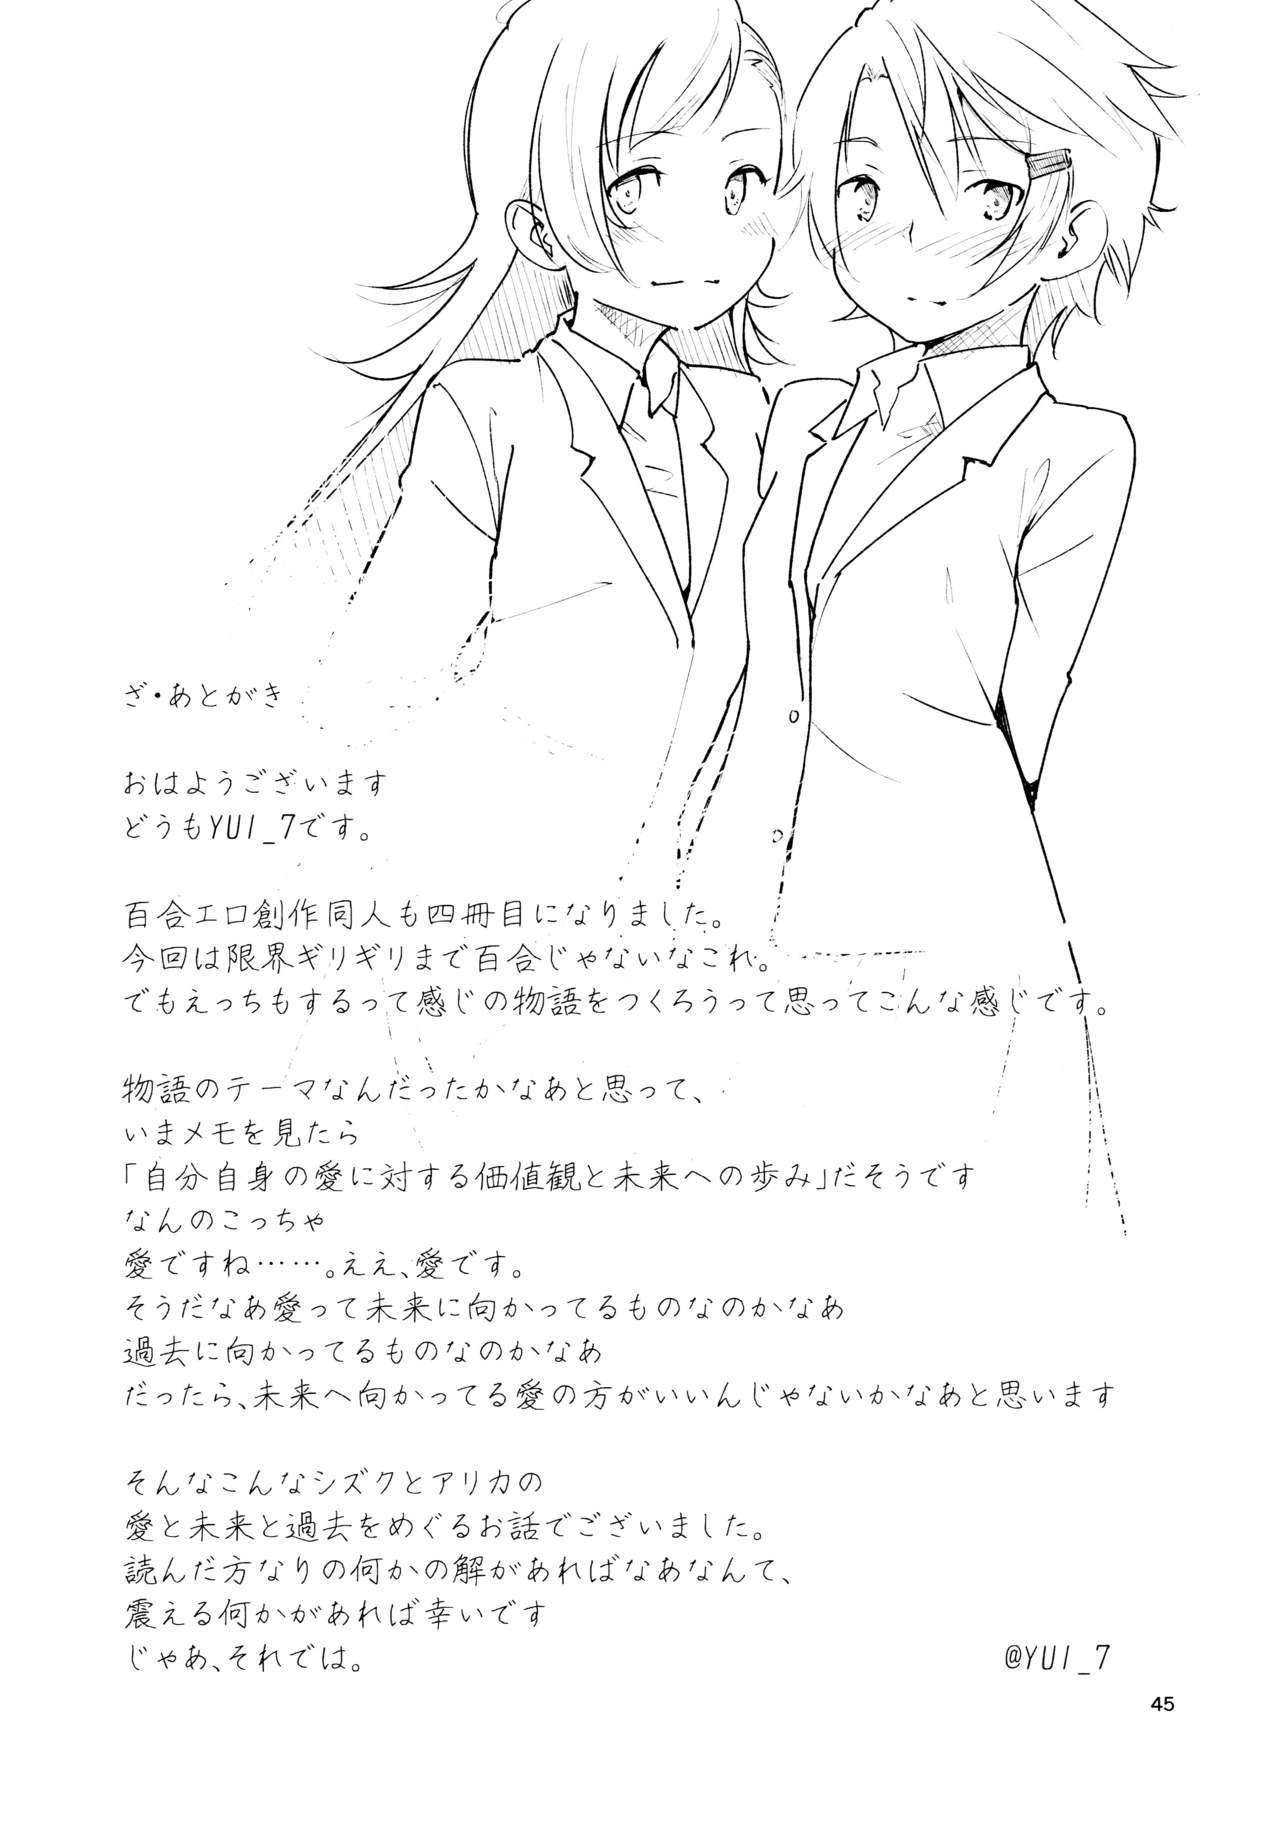 Topless Ryuusui - Ishi to Ashita to Tenohira no Ondo Fucking Girls - Page 45